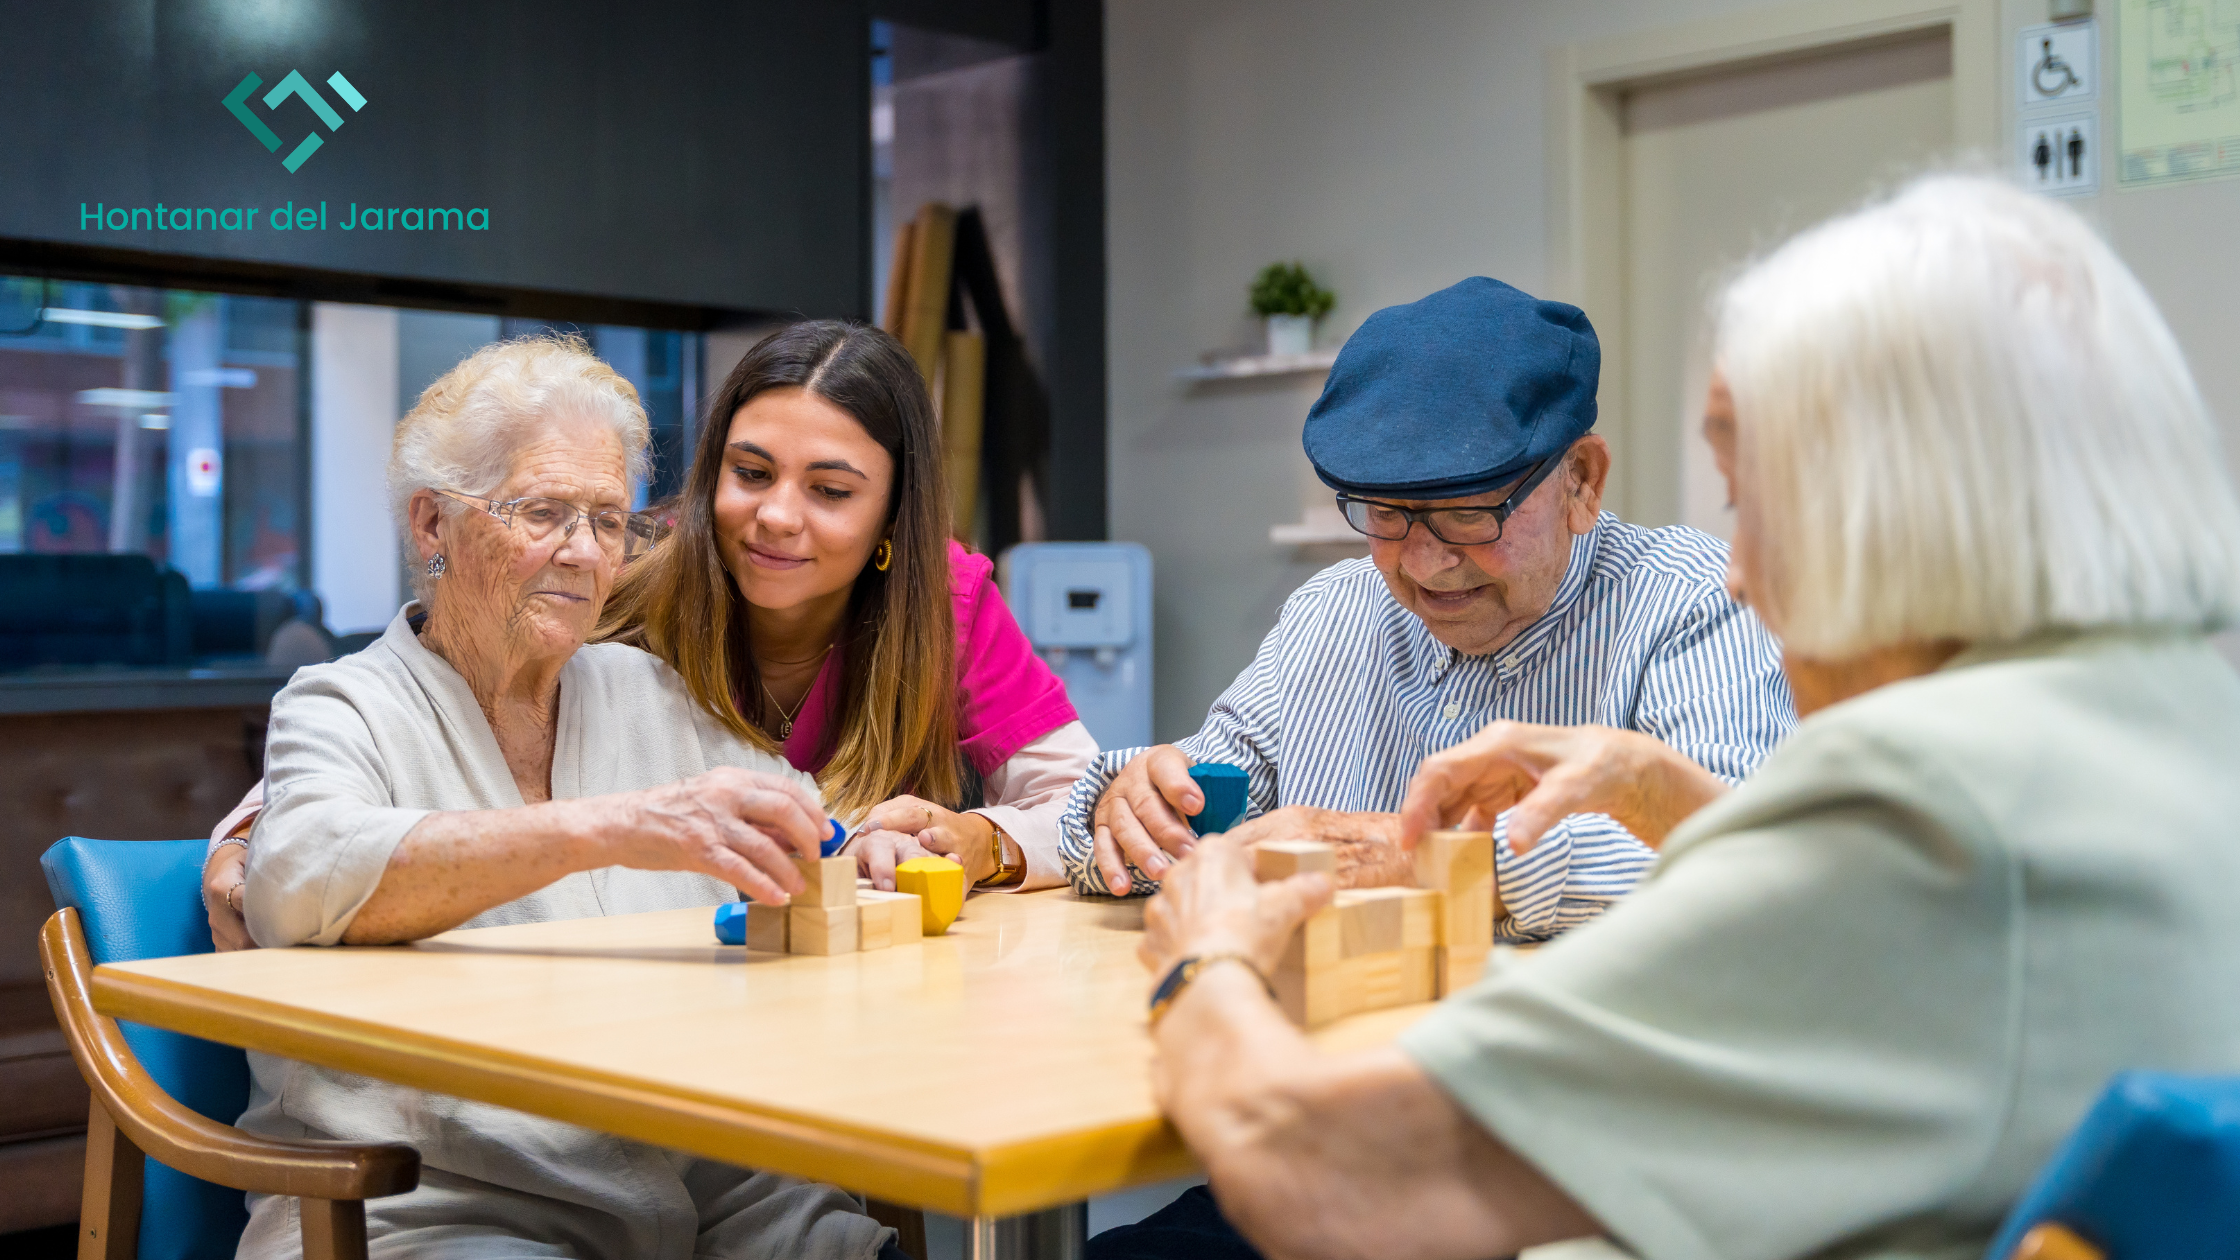 Programas destinados a potenciar la agilidad mental en residencias de mayores